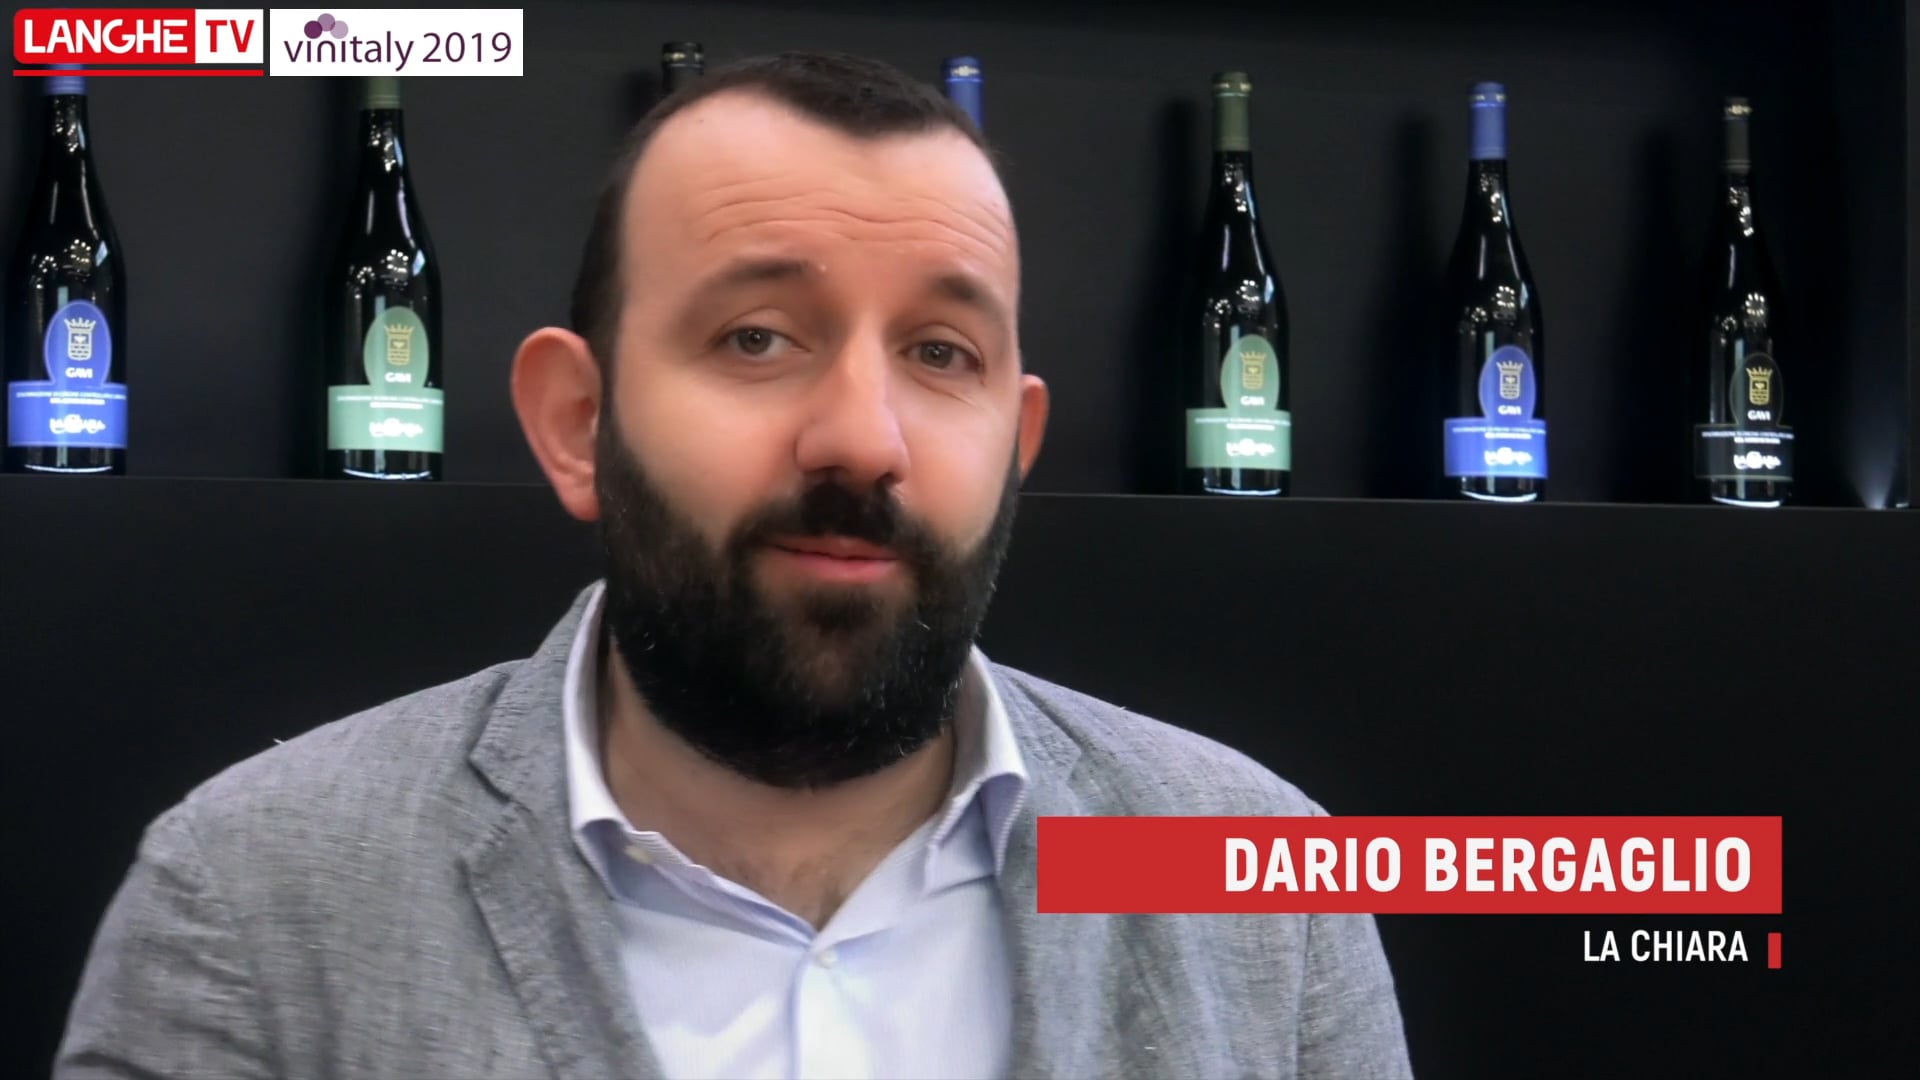 Vinitaly 2019: Dario Bergaglio | Cantina La Chiara